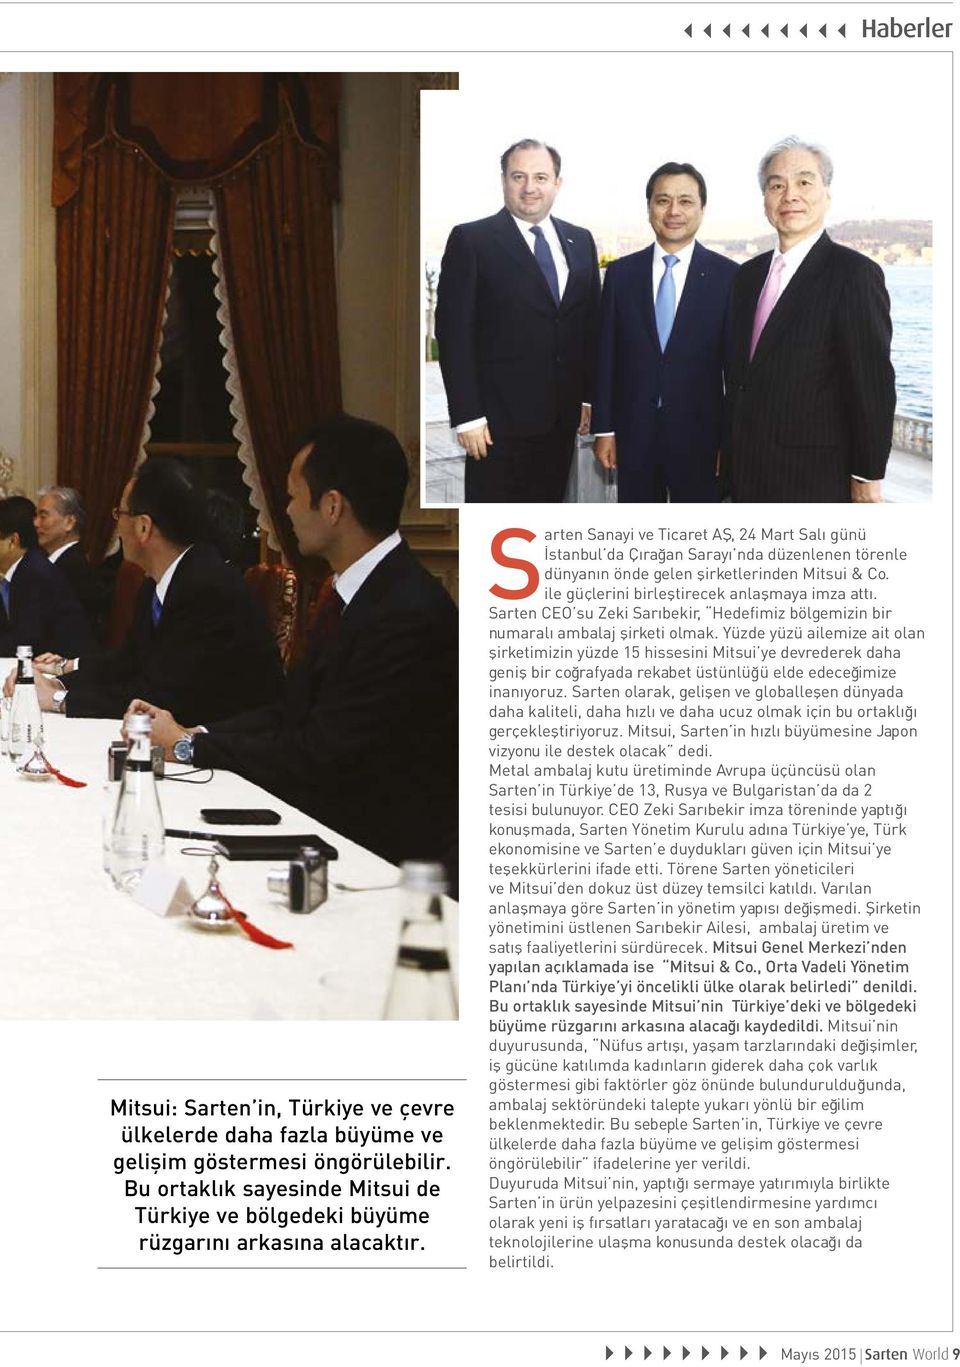 Sarten CEO su Zeki Sarıbekir, Hedefimiz bölgemizin bir numaralı ambalaj şirketi olmak.